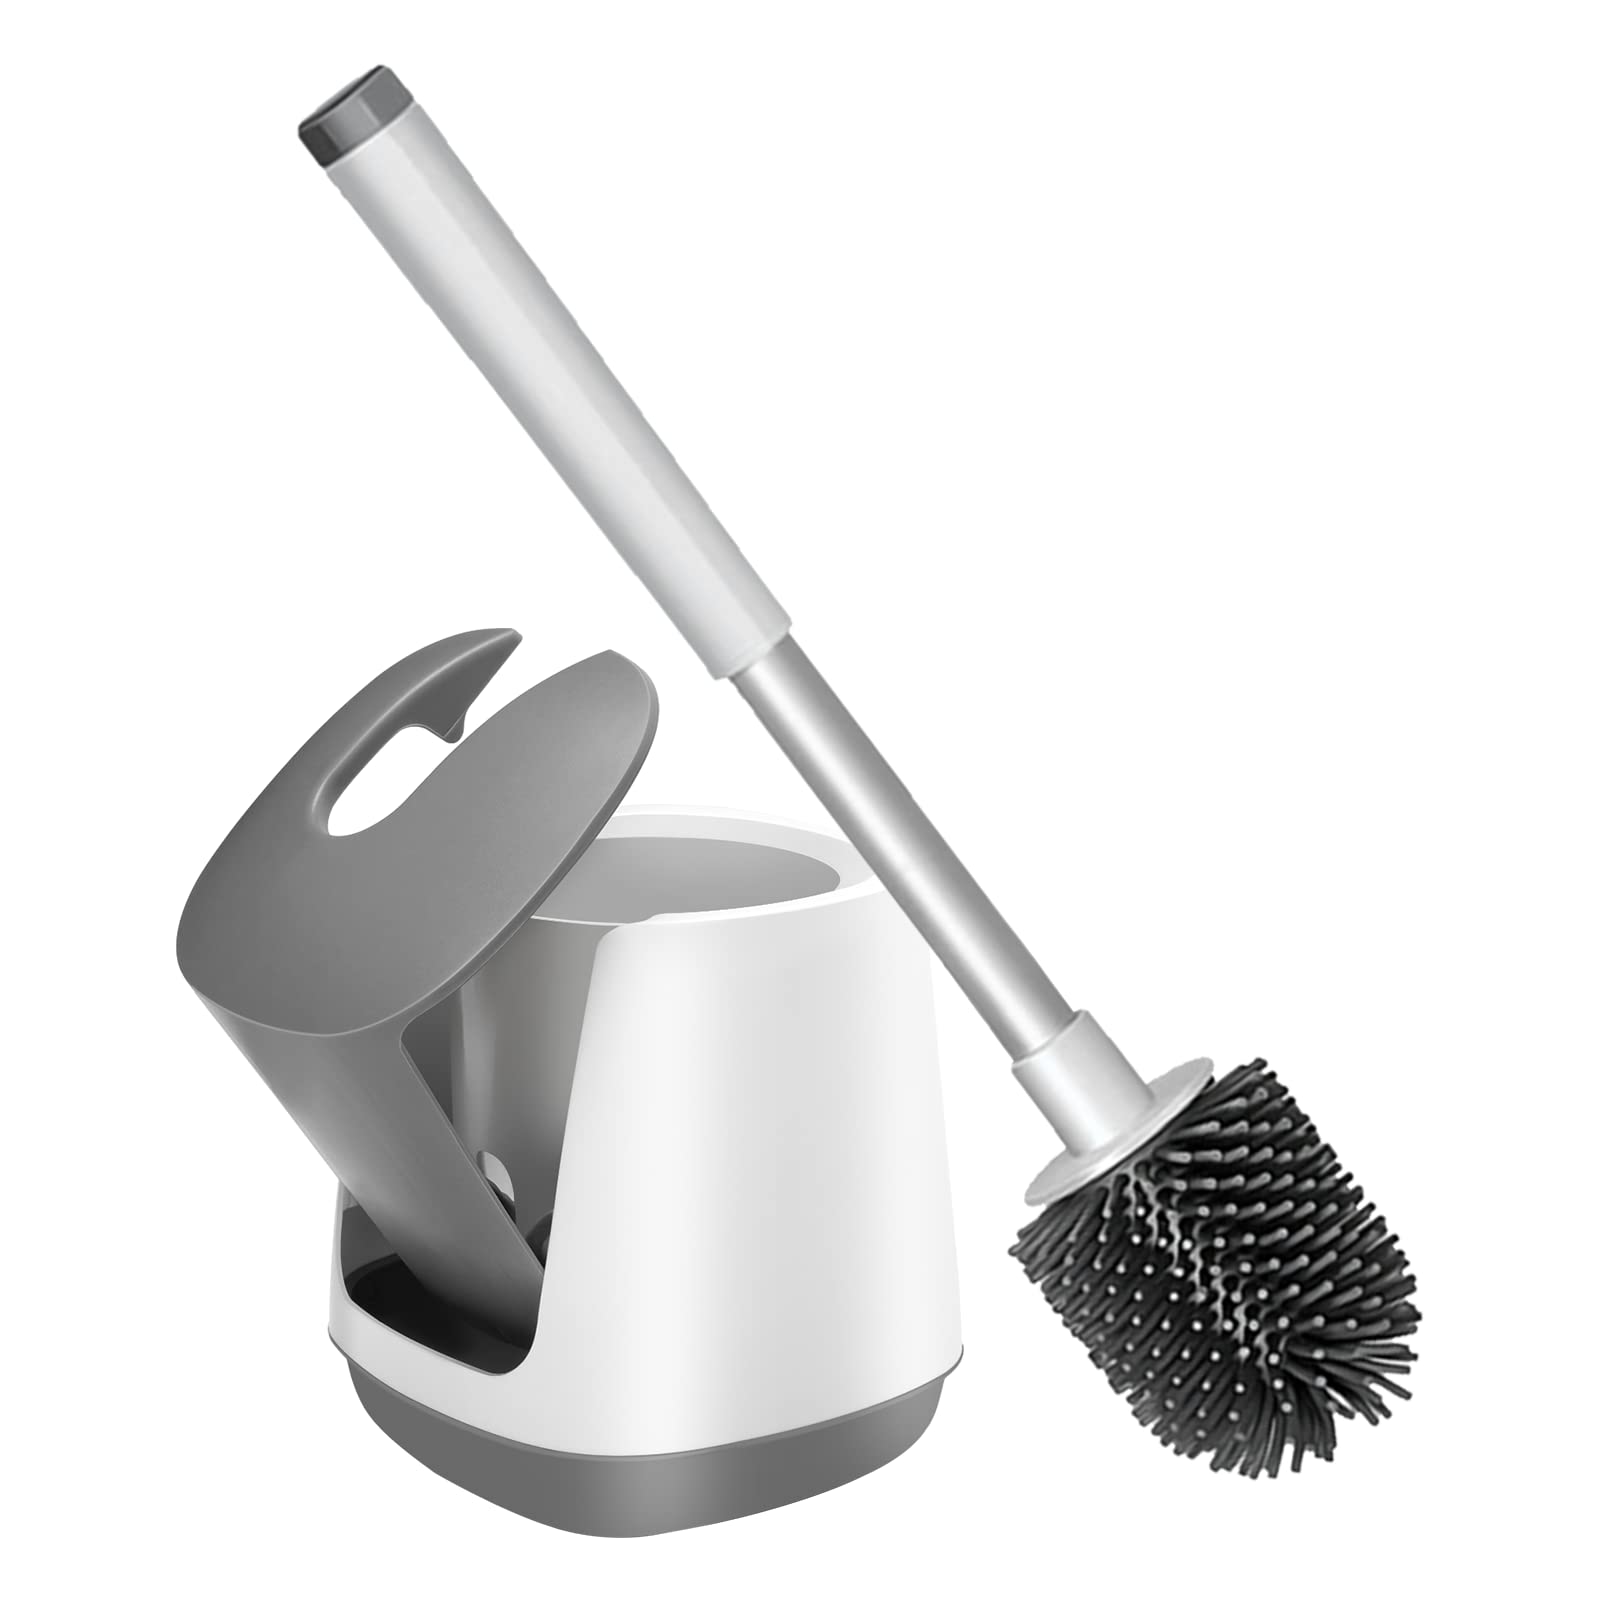 Toilet Brush with Holder for Bathroom, Toilet Bowl Cleaner Brush